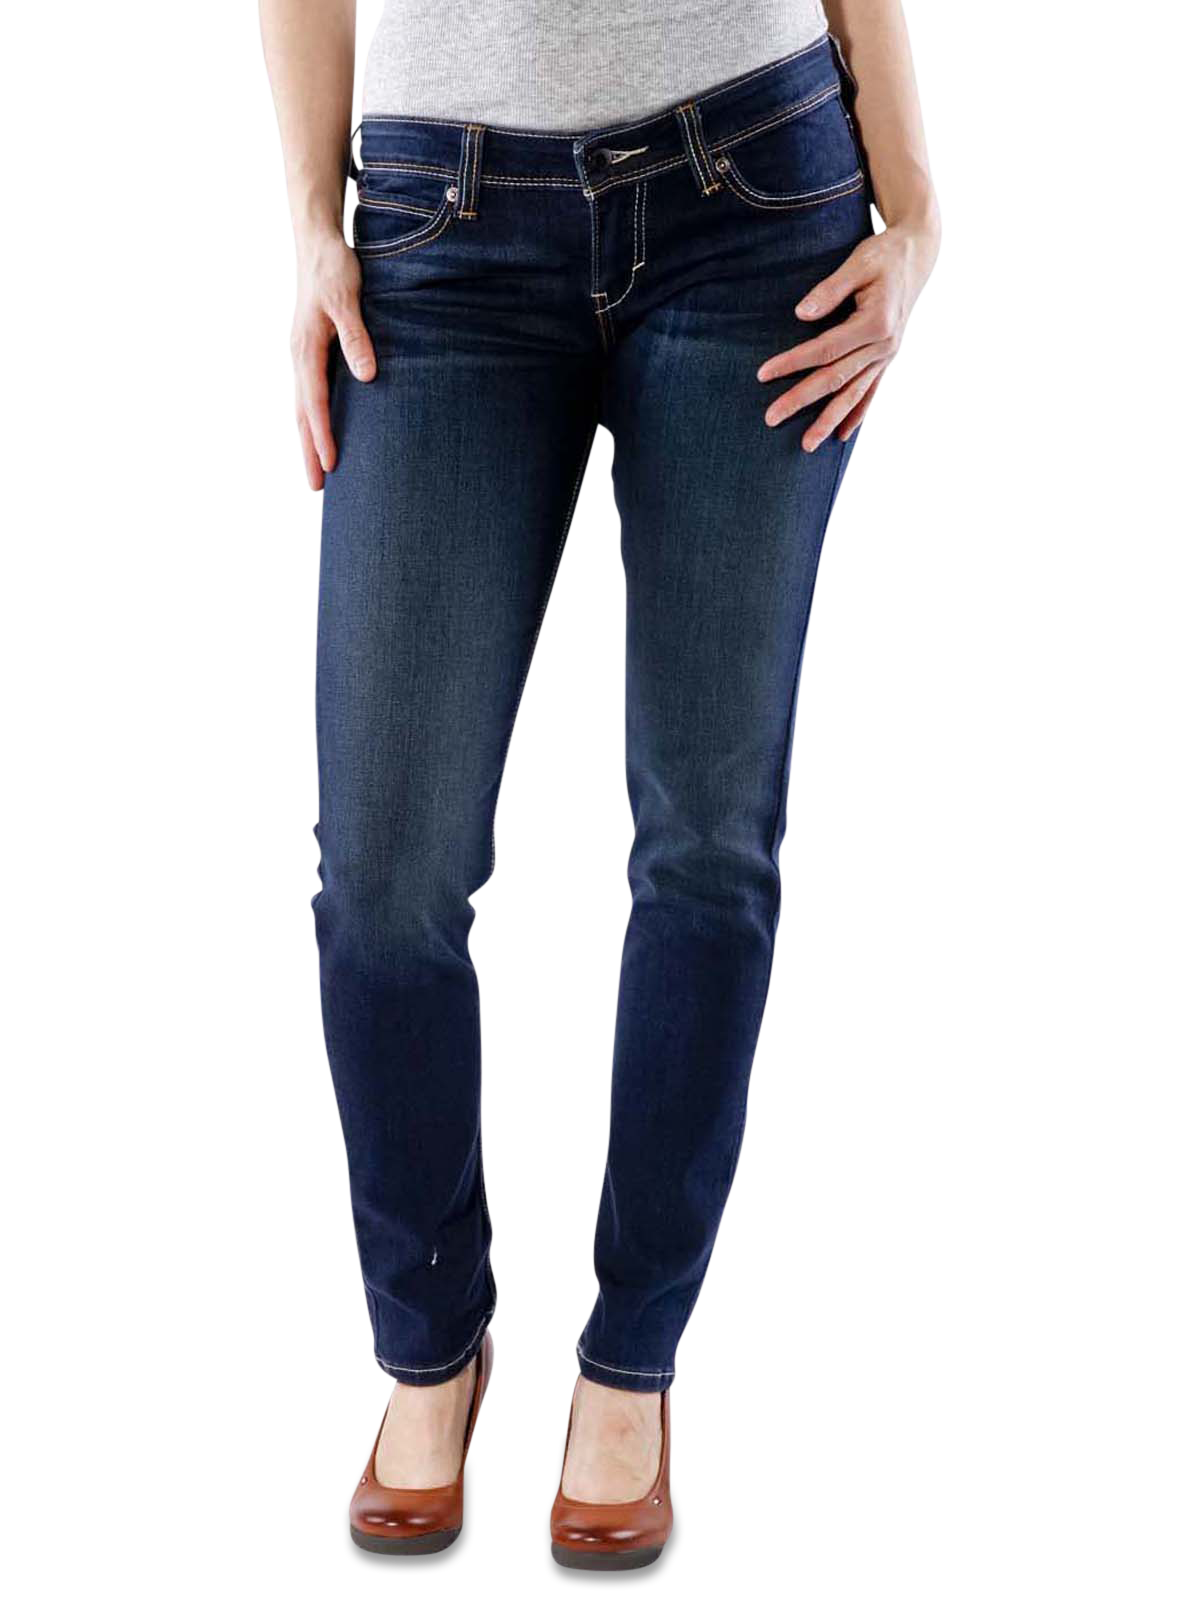 Jeans Transparent File Clip Art